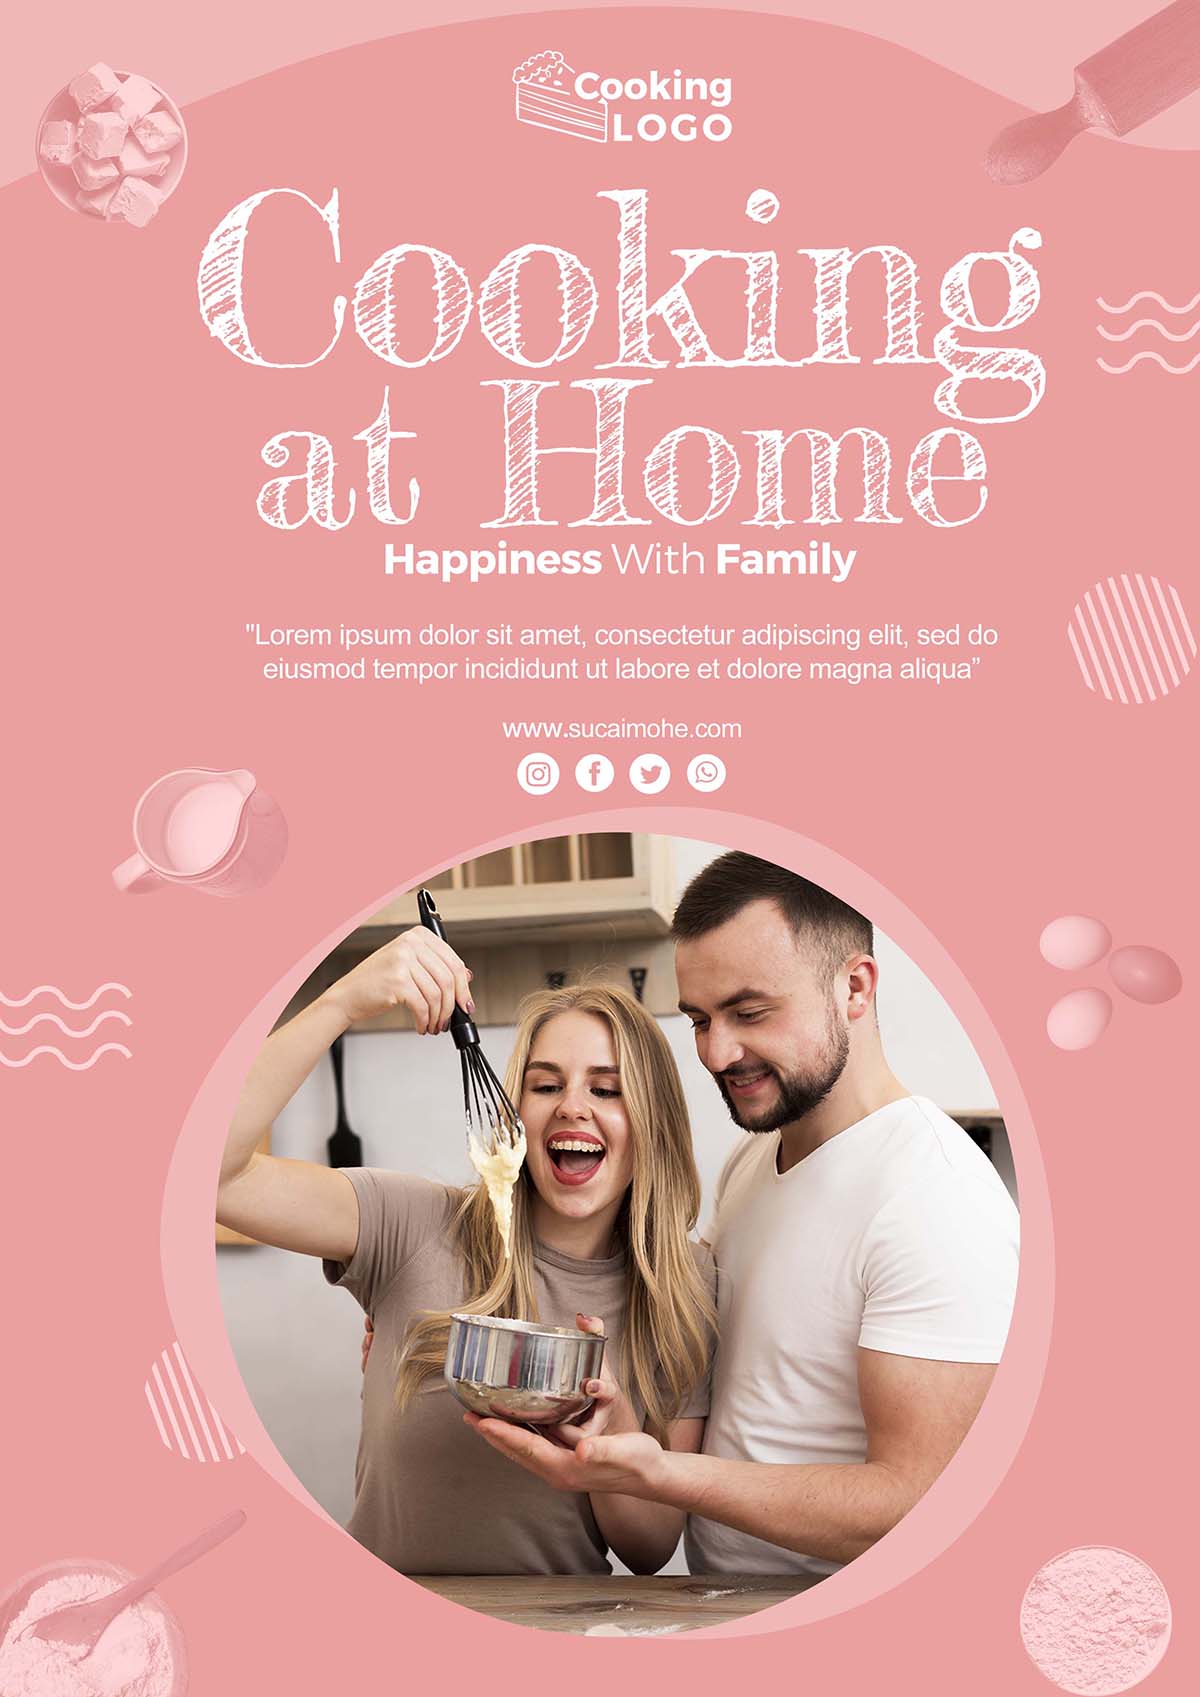 家庭厨具做饭海报设计poster-template-with-cooking-home